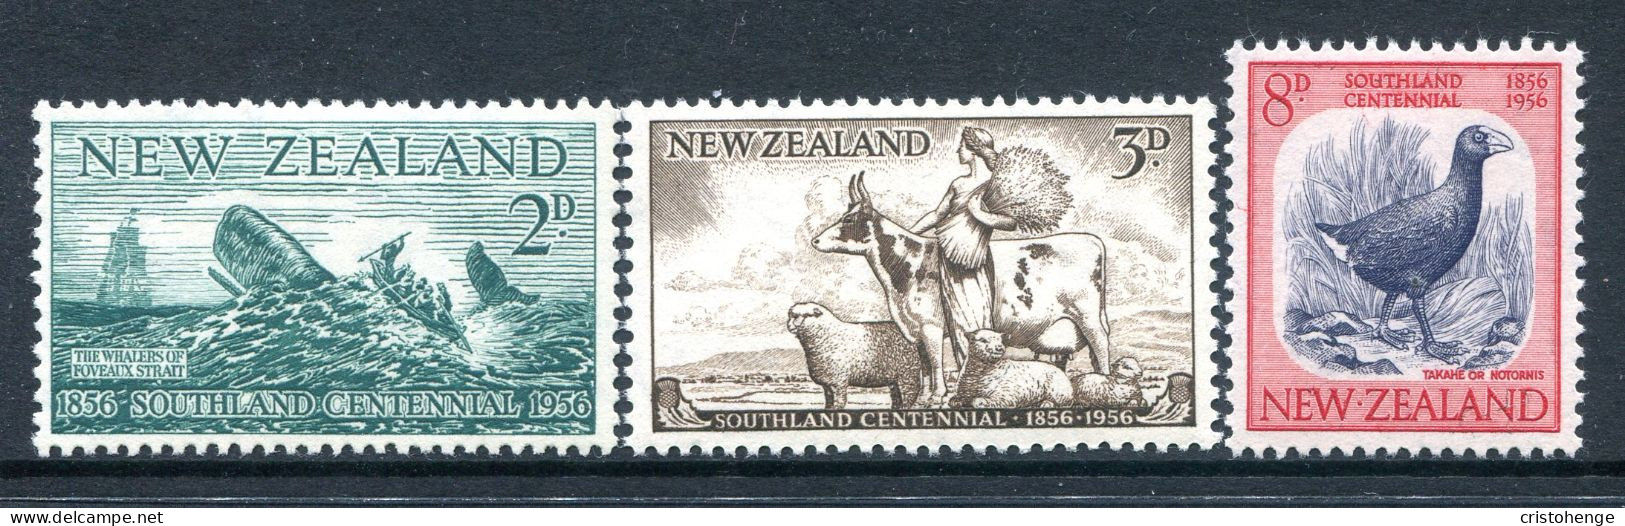 New Zealand 1956 Southland Centennial Set HM (SG 752-754) - Ongebruikt